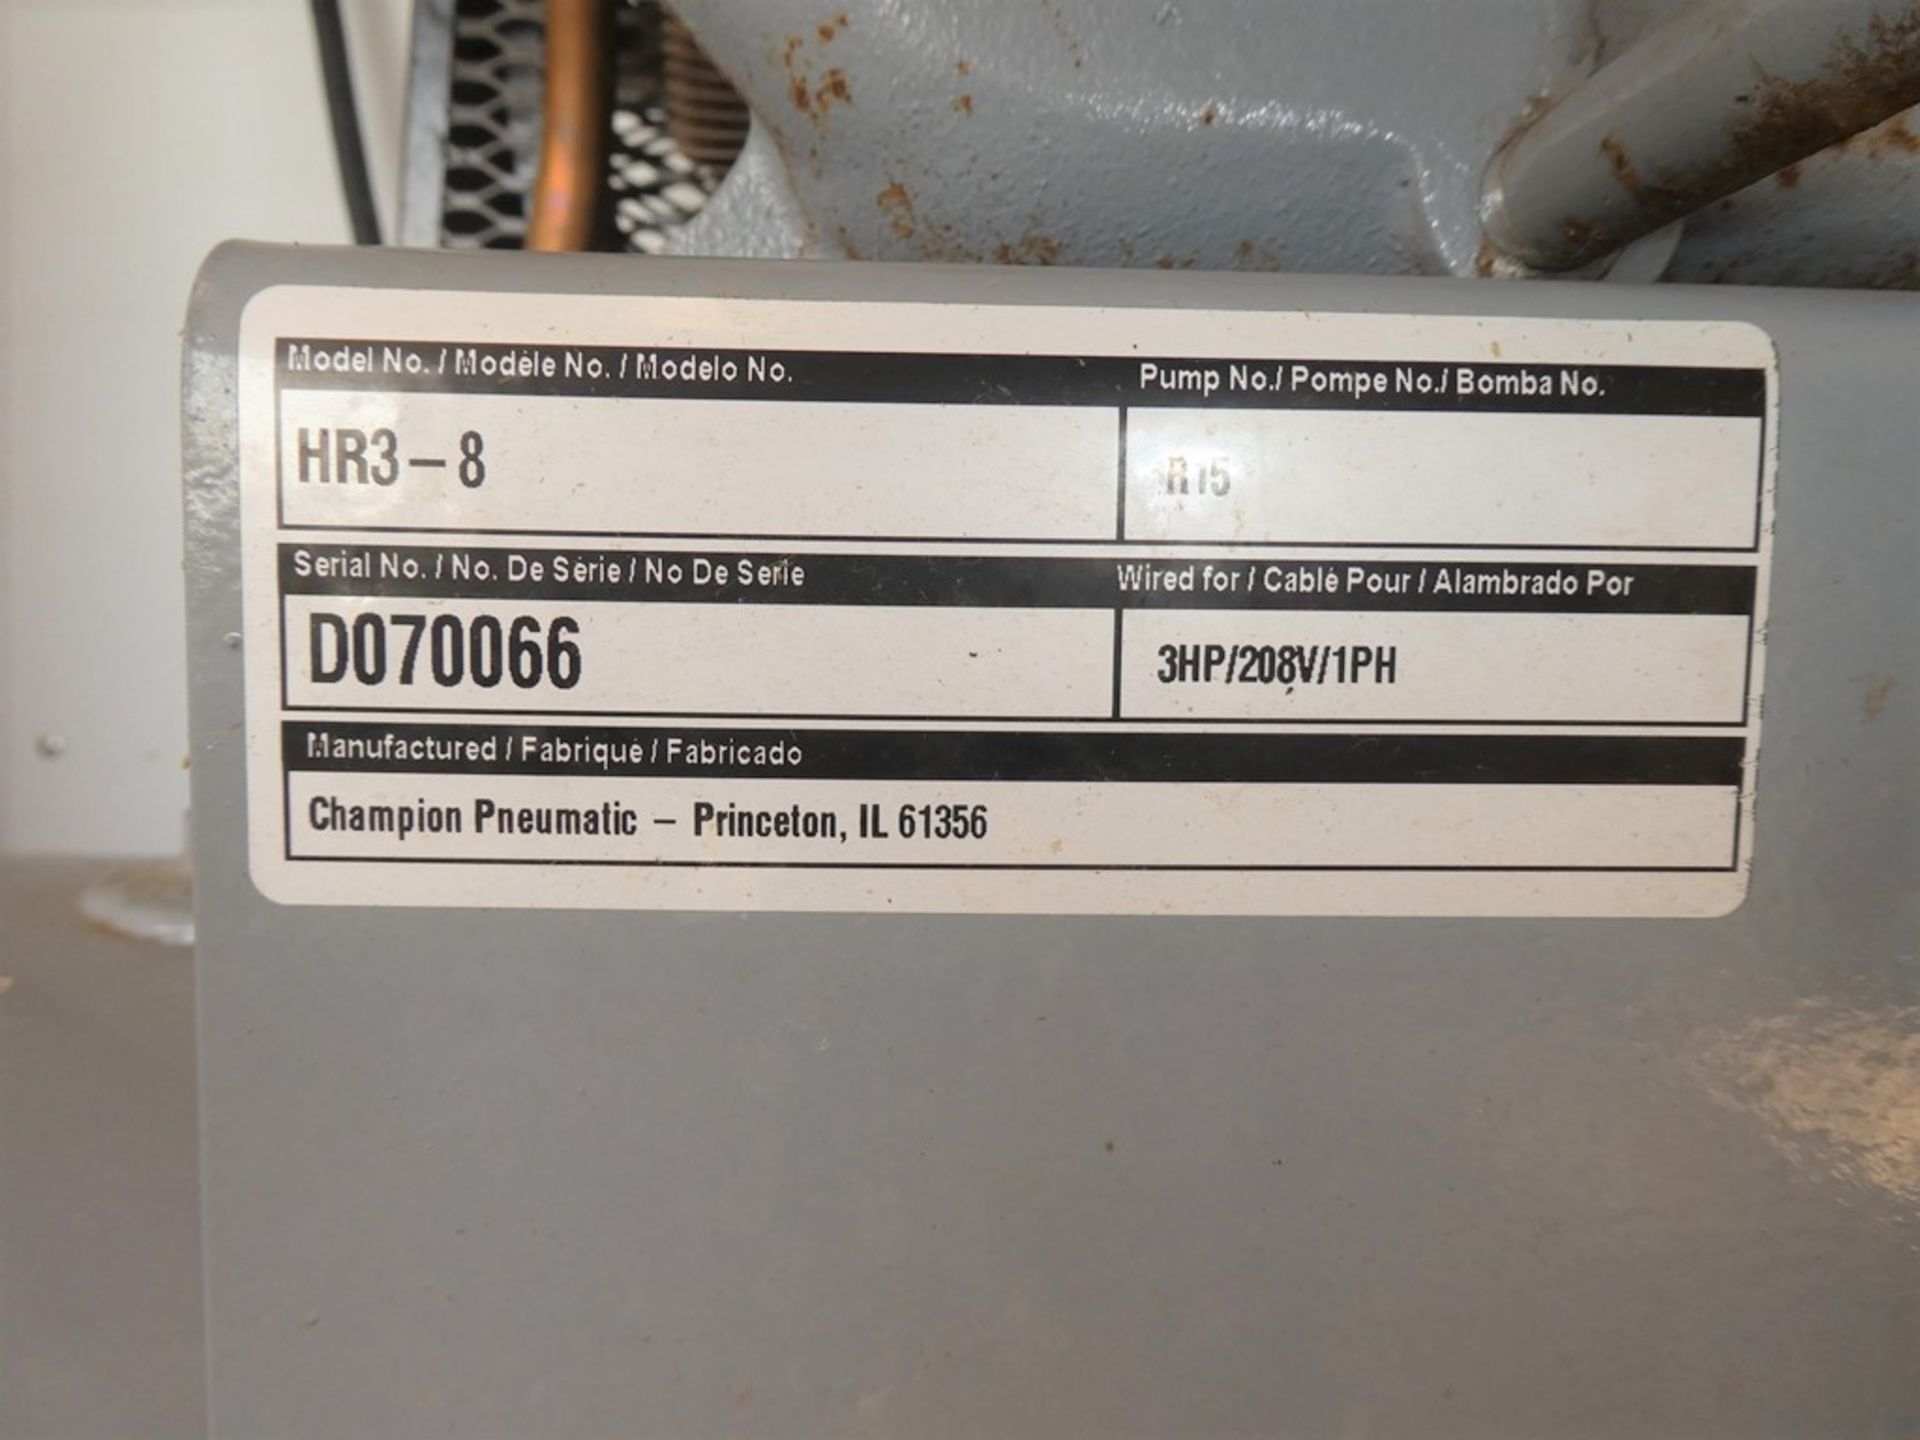 GARDNER DENVER HR3-8 HORIZONTAL AIR COMPRESSOR 3HP 208V 1PH S/N D070066 - Image 3 of 3